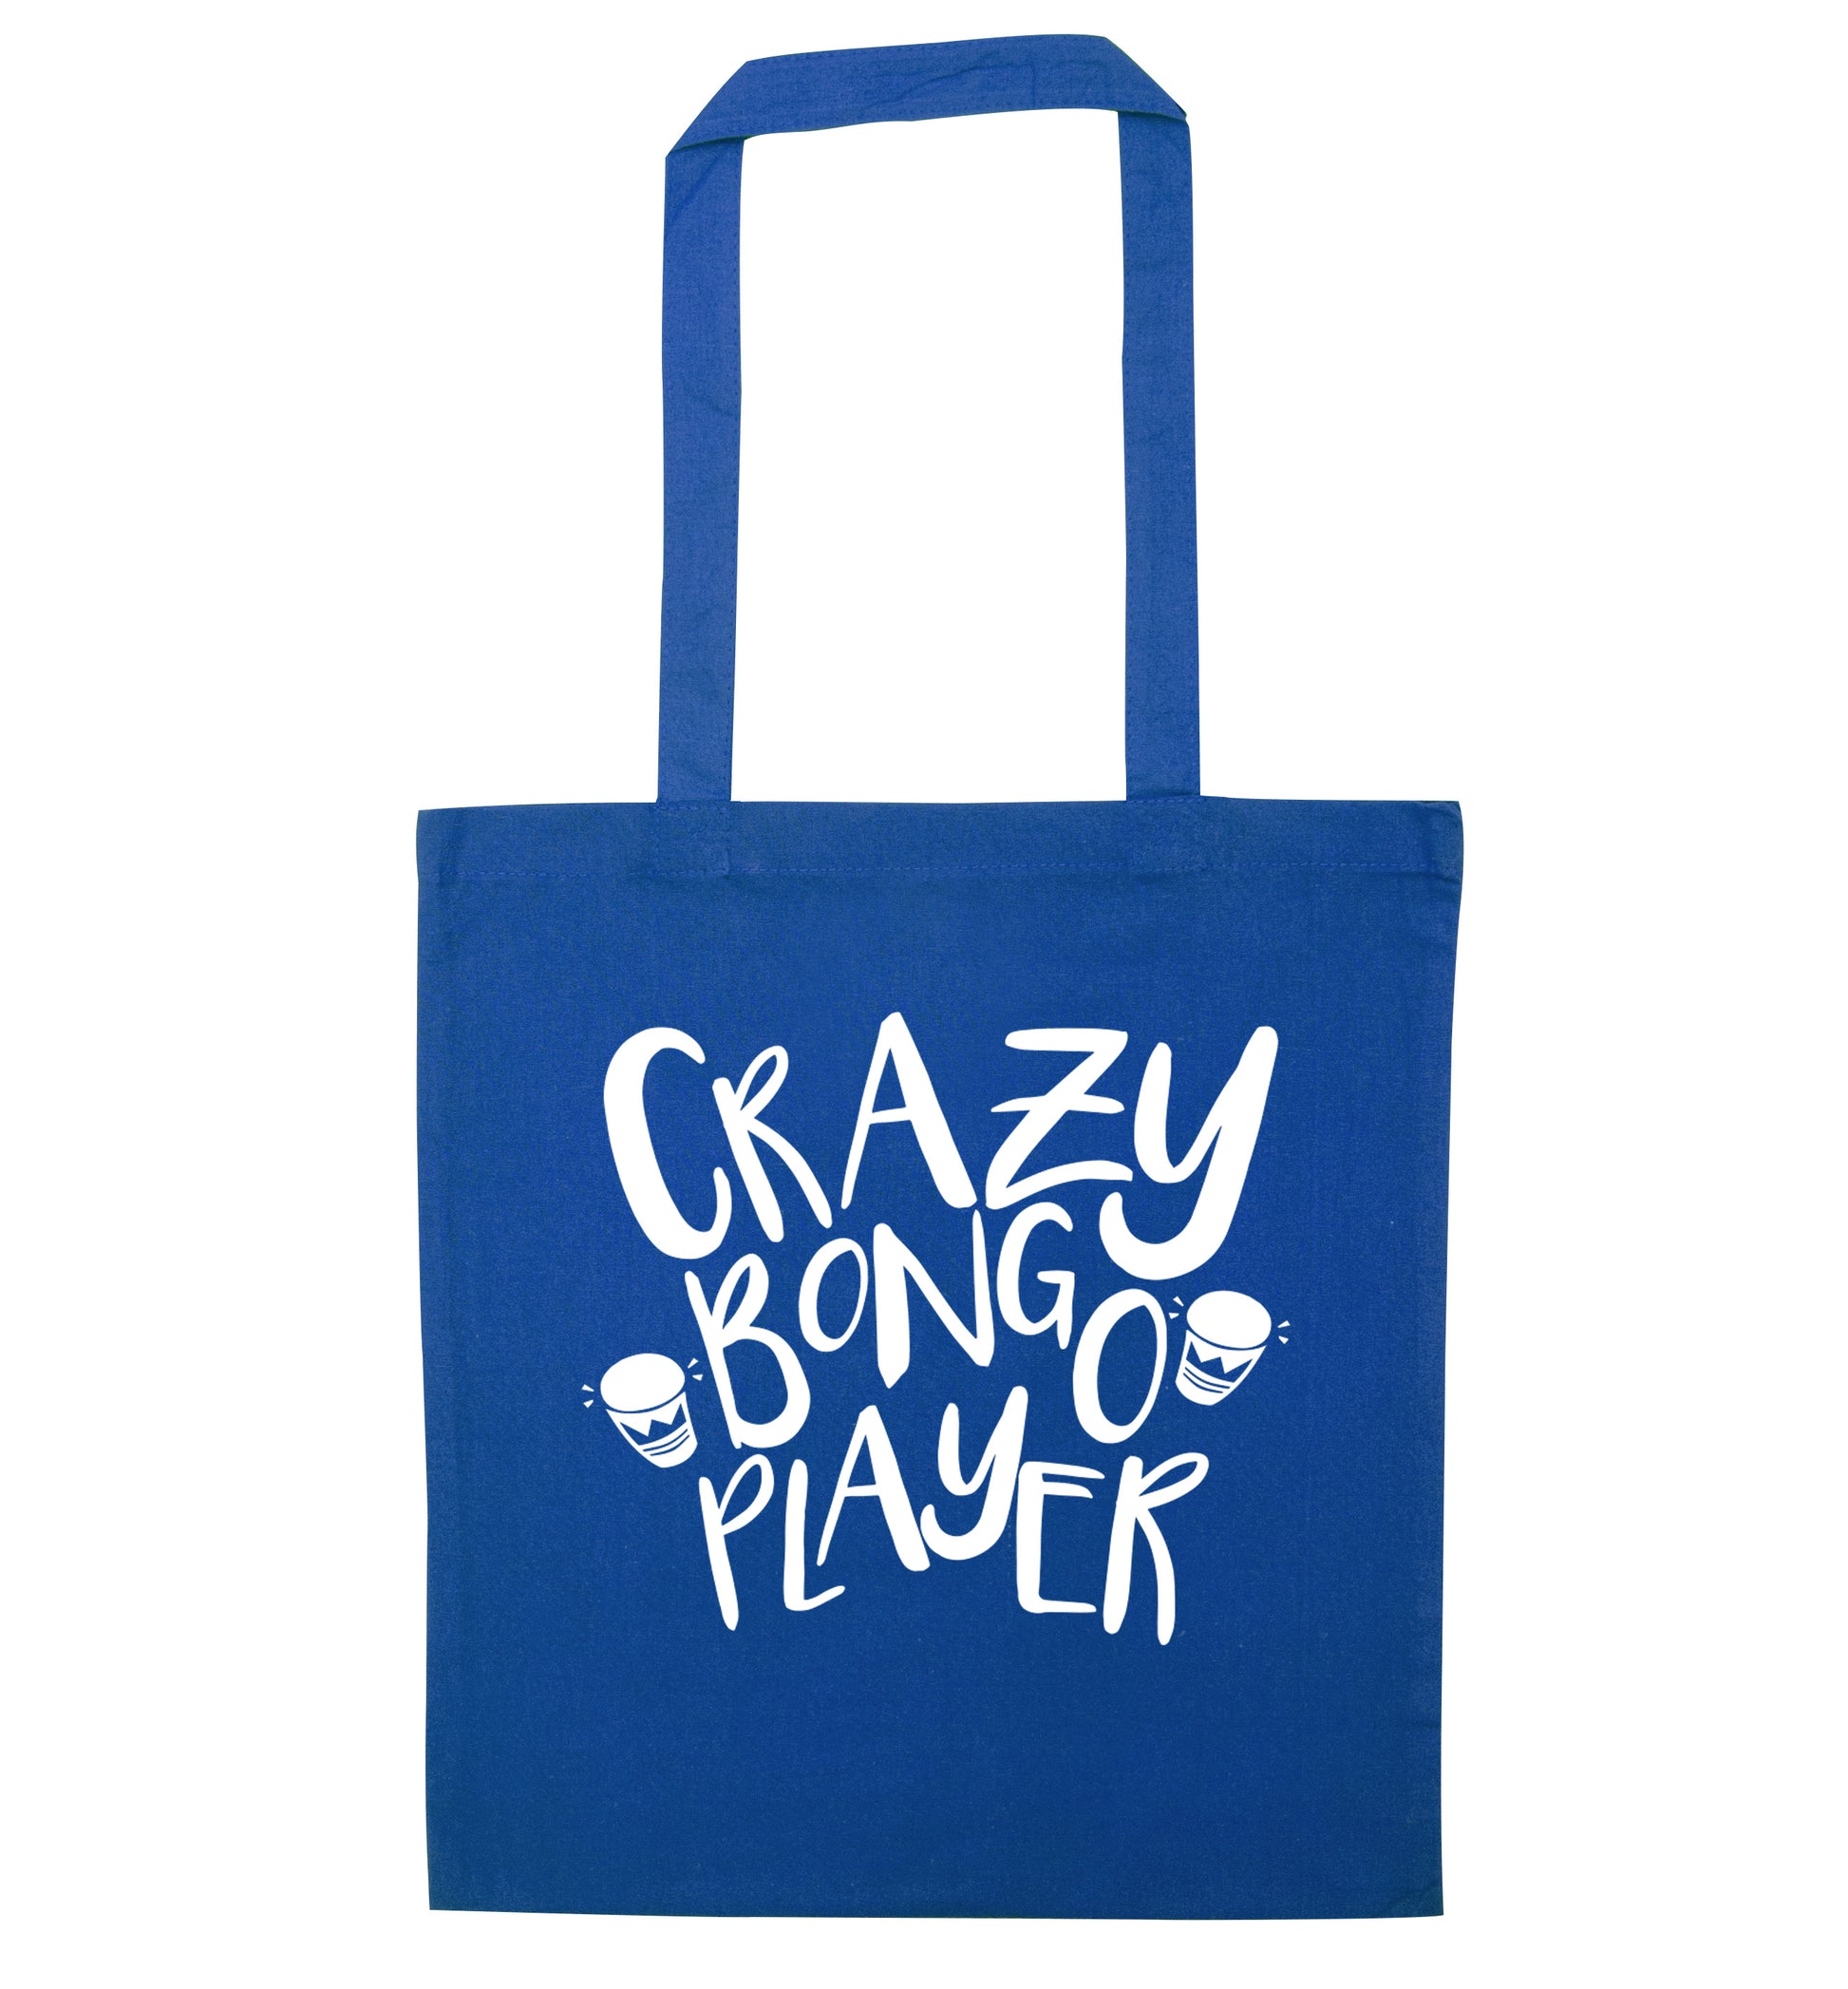 Crazy bongo player blue tote bag